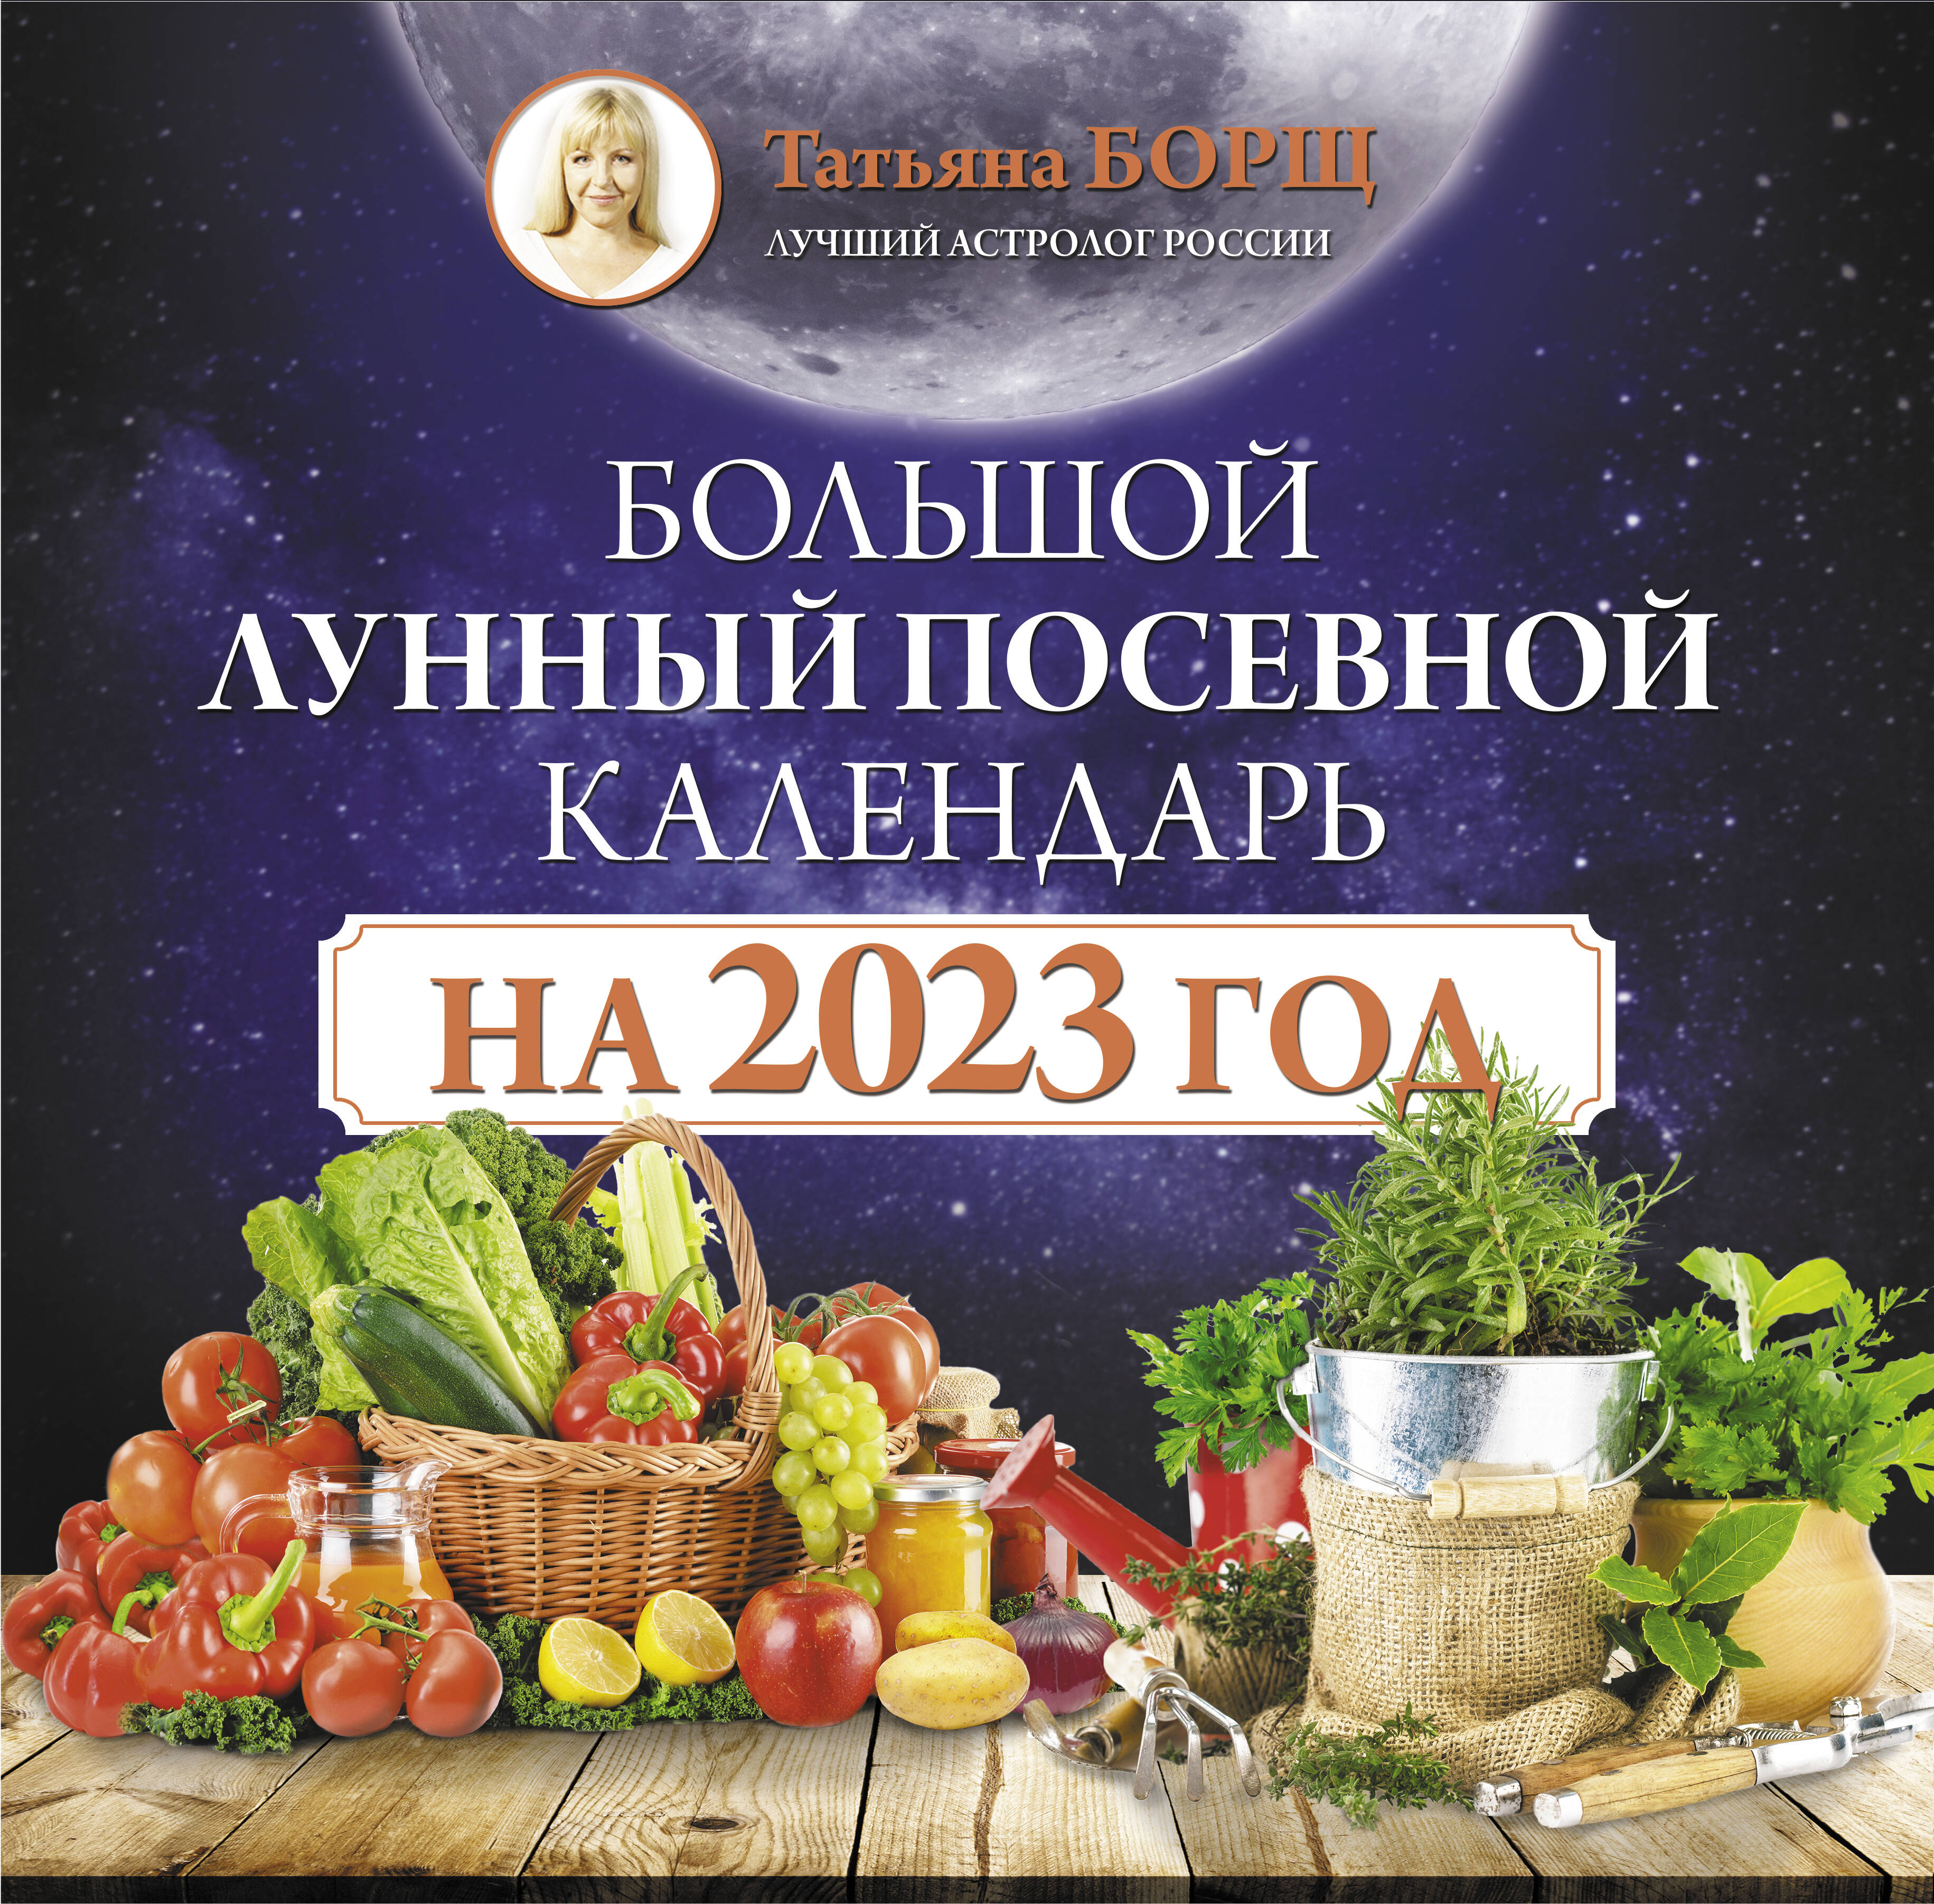 Борщ Татьяна Большой лунный посевной календарь на 2023 год - страница 0